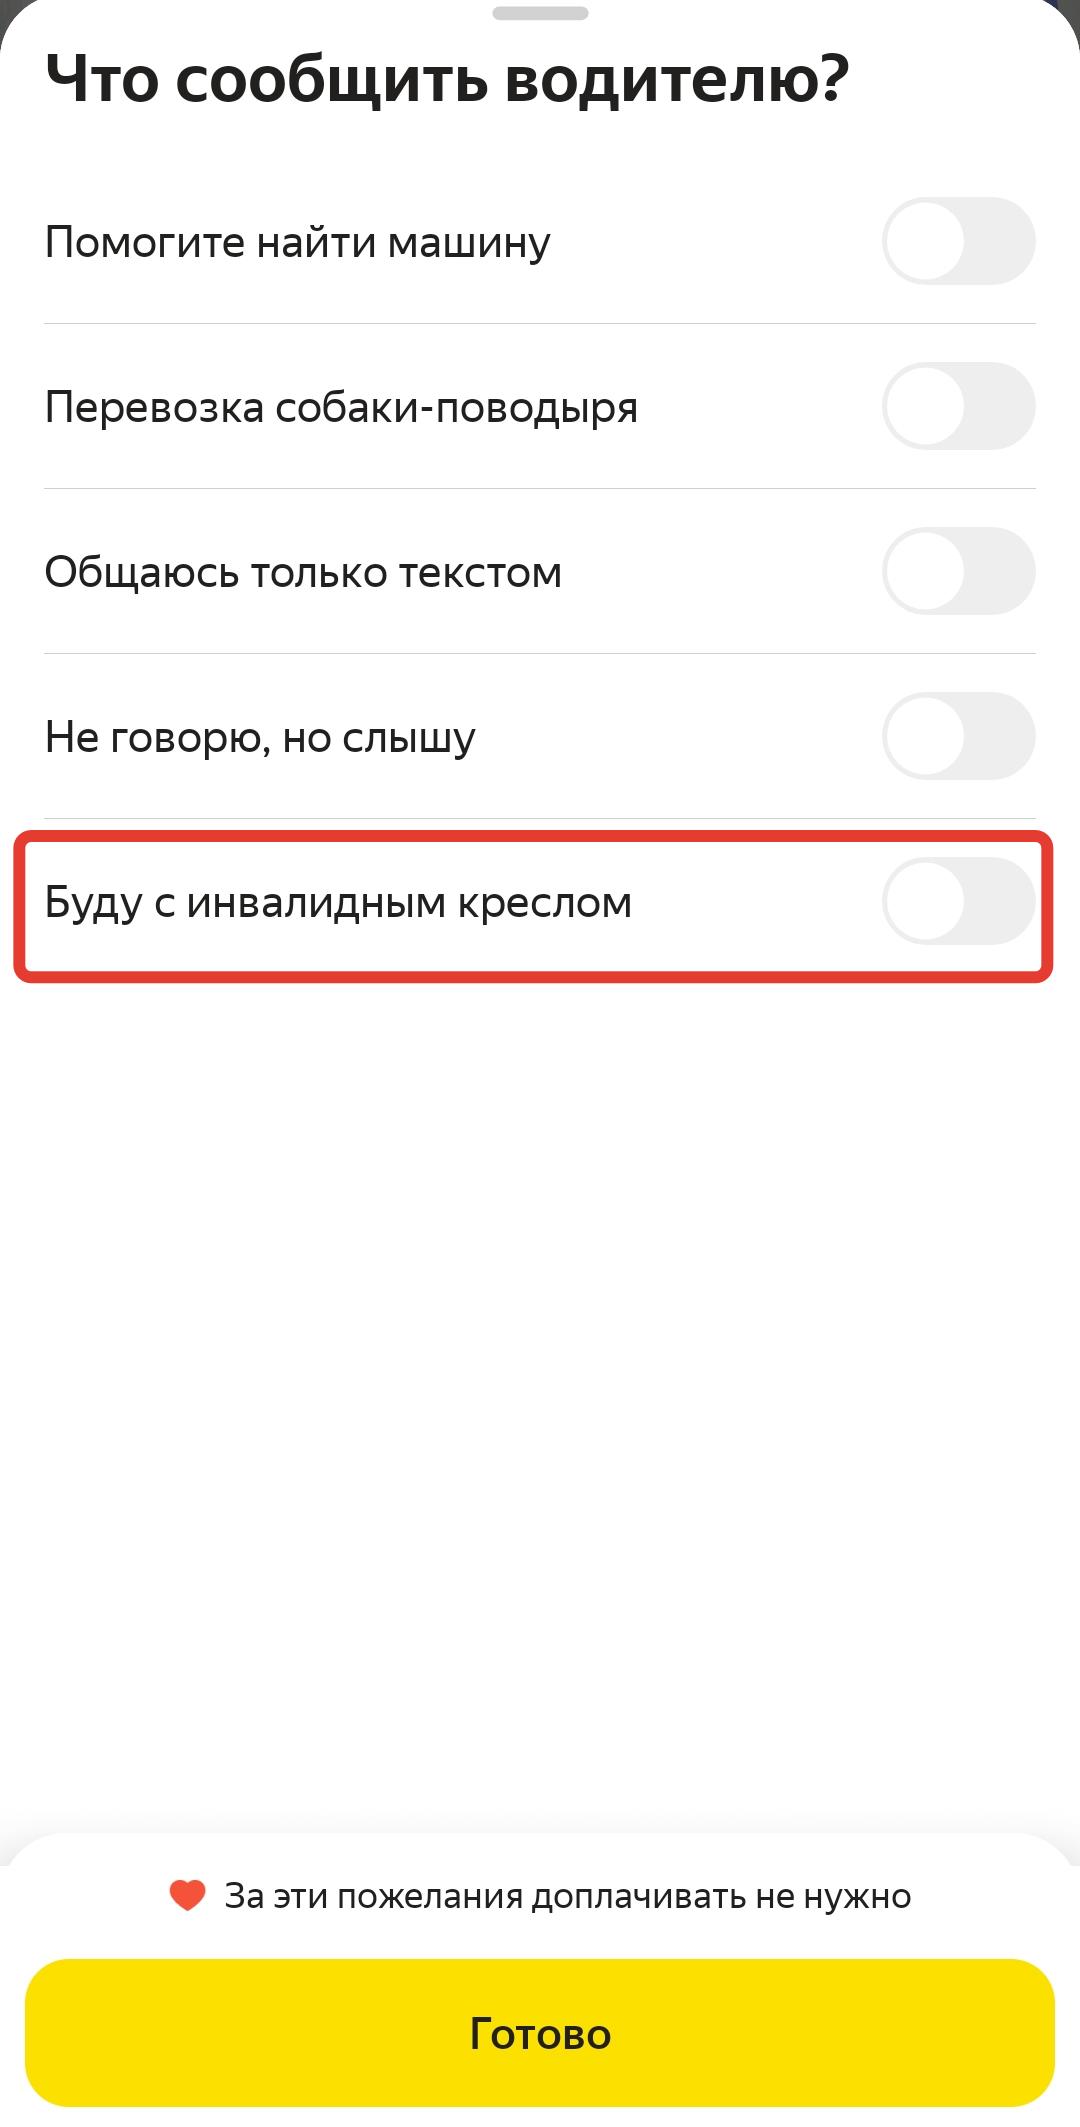 Скриншот приложения "Яндекс Такси" с выбором "Что сообщить водителю"